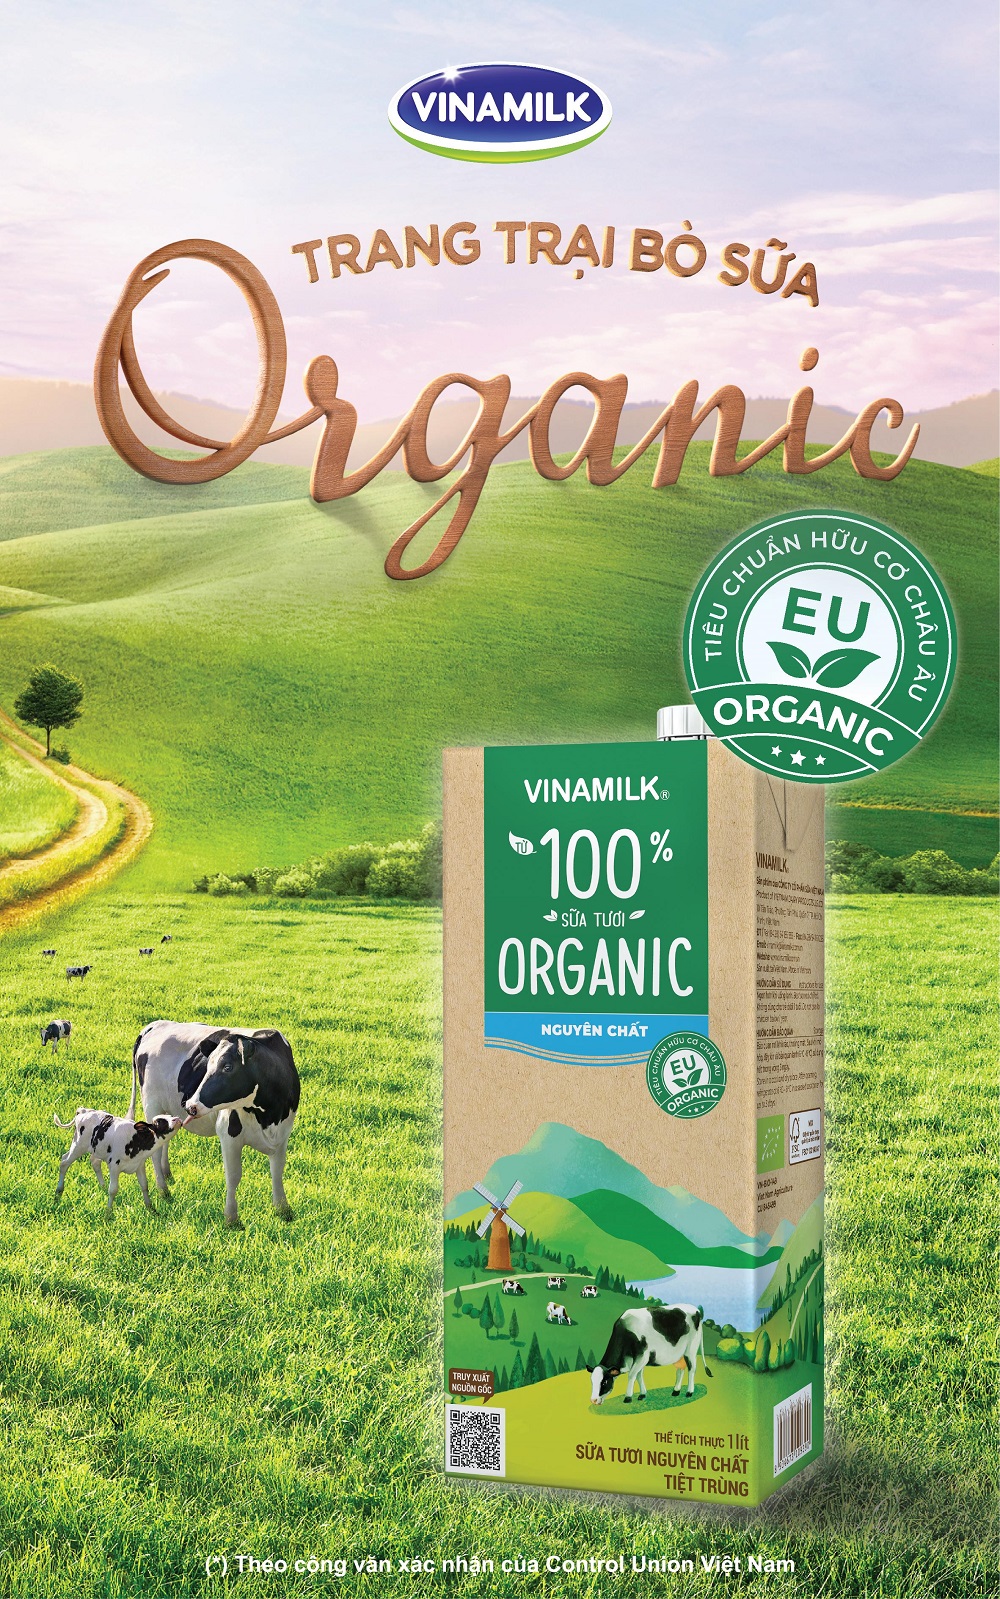 Sữa tươi Vinamilk Organic không đường (*) là lựa chọn an toàn và hợp lý giúp thai kỳ khỏe mạnh.